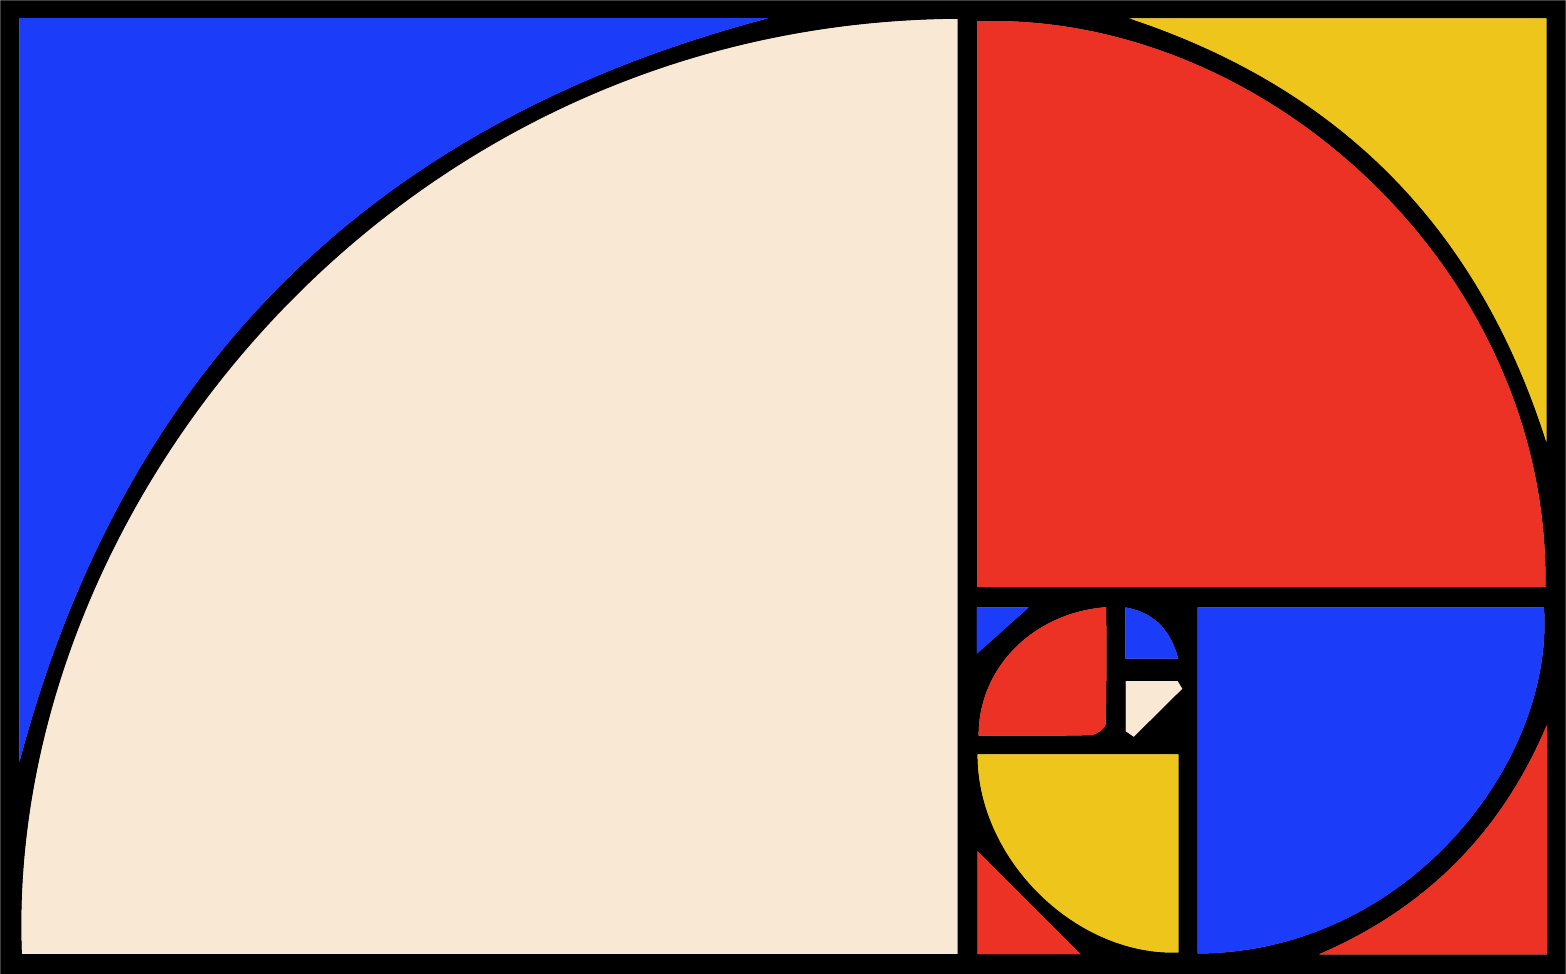 Suite de Fibonacci aux couleurs de Mondrian